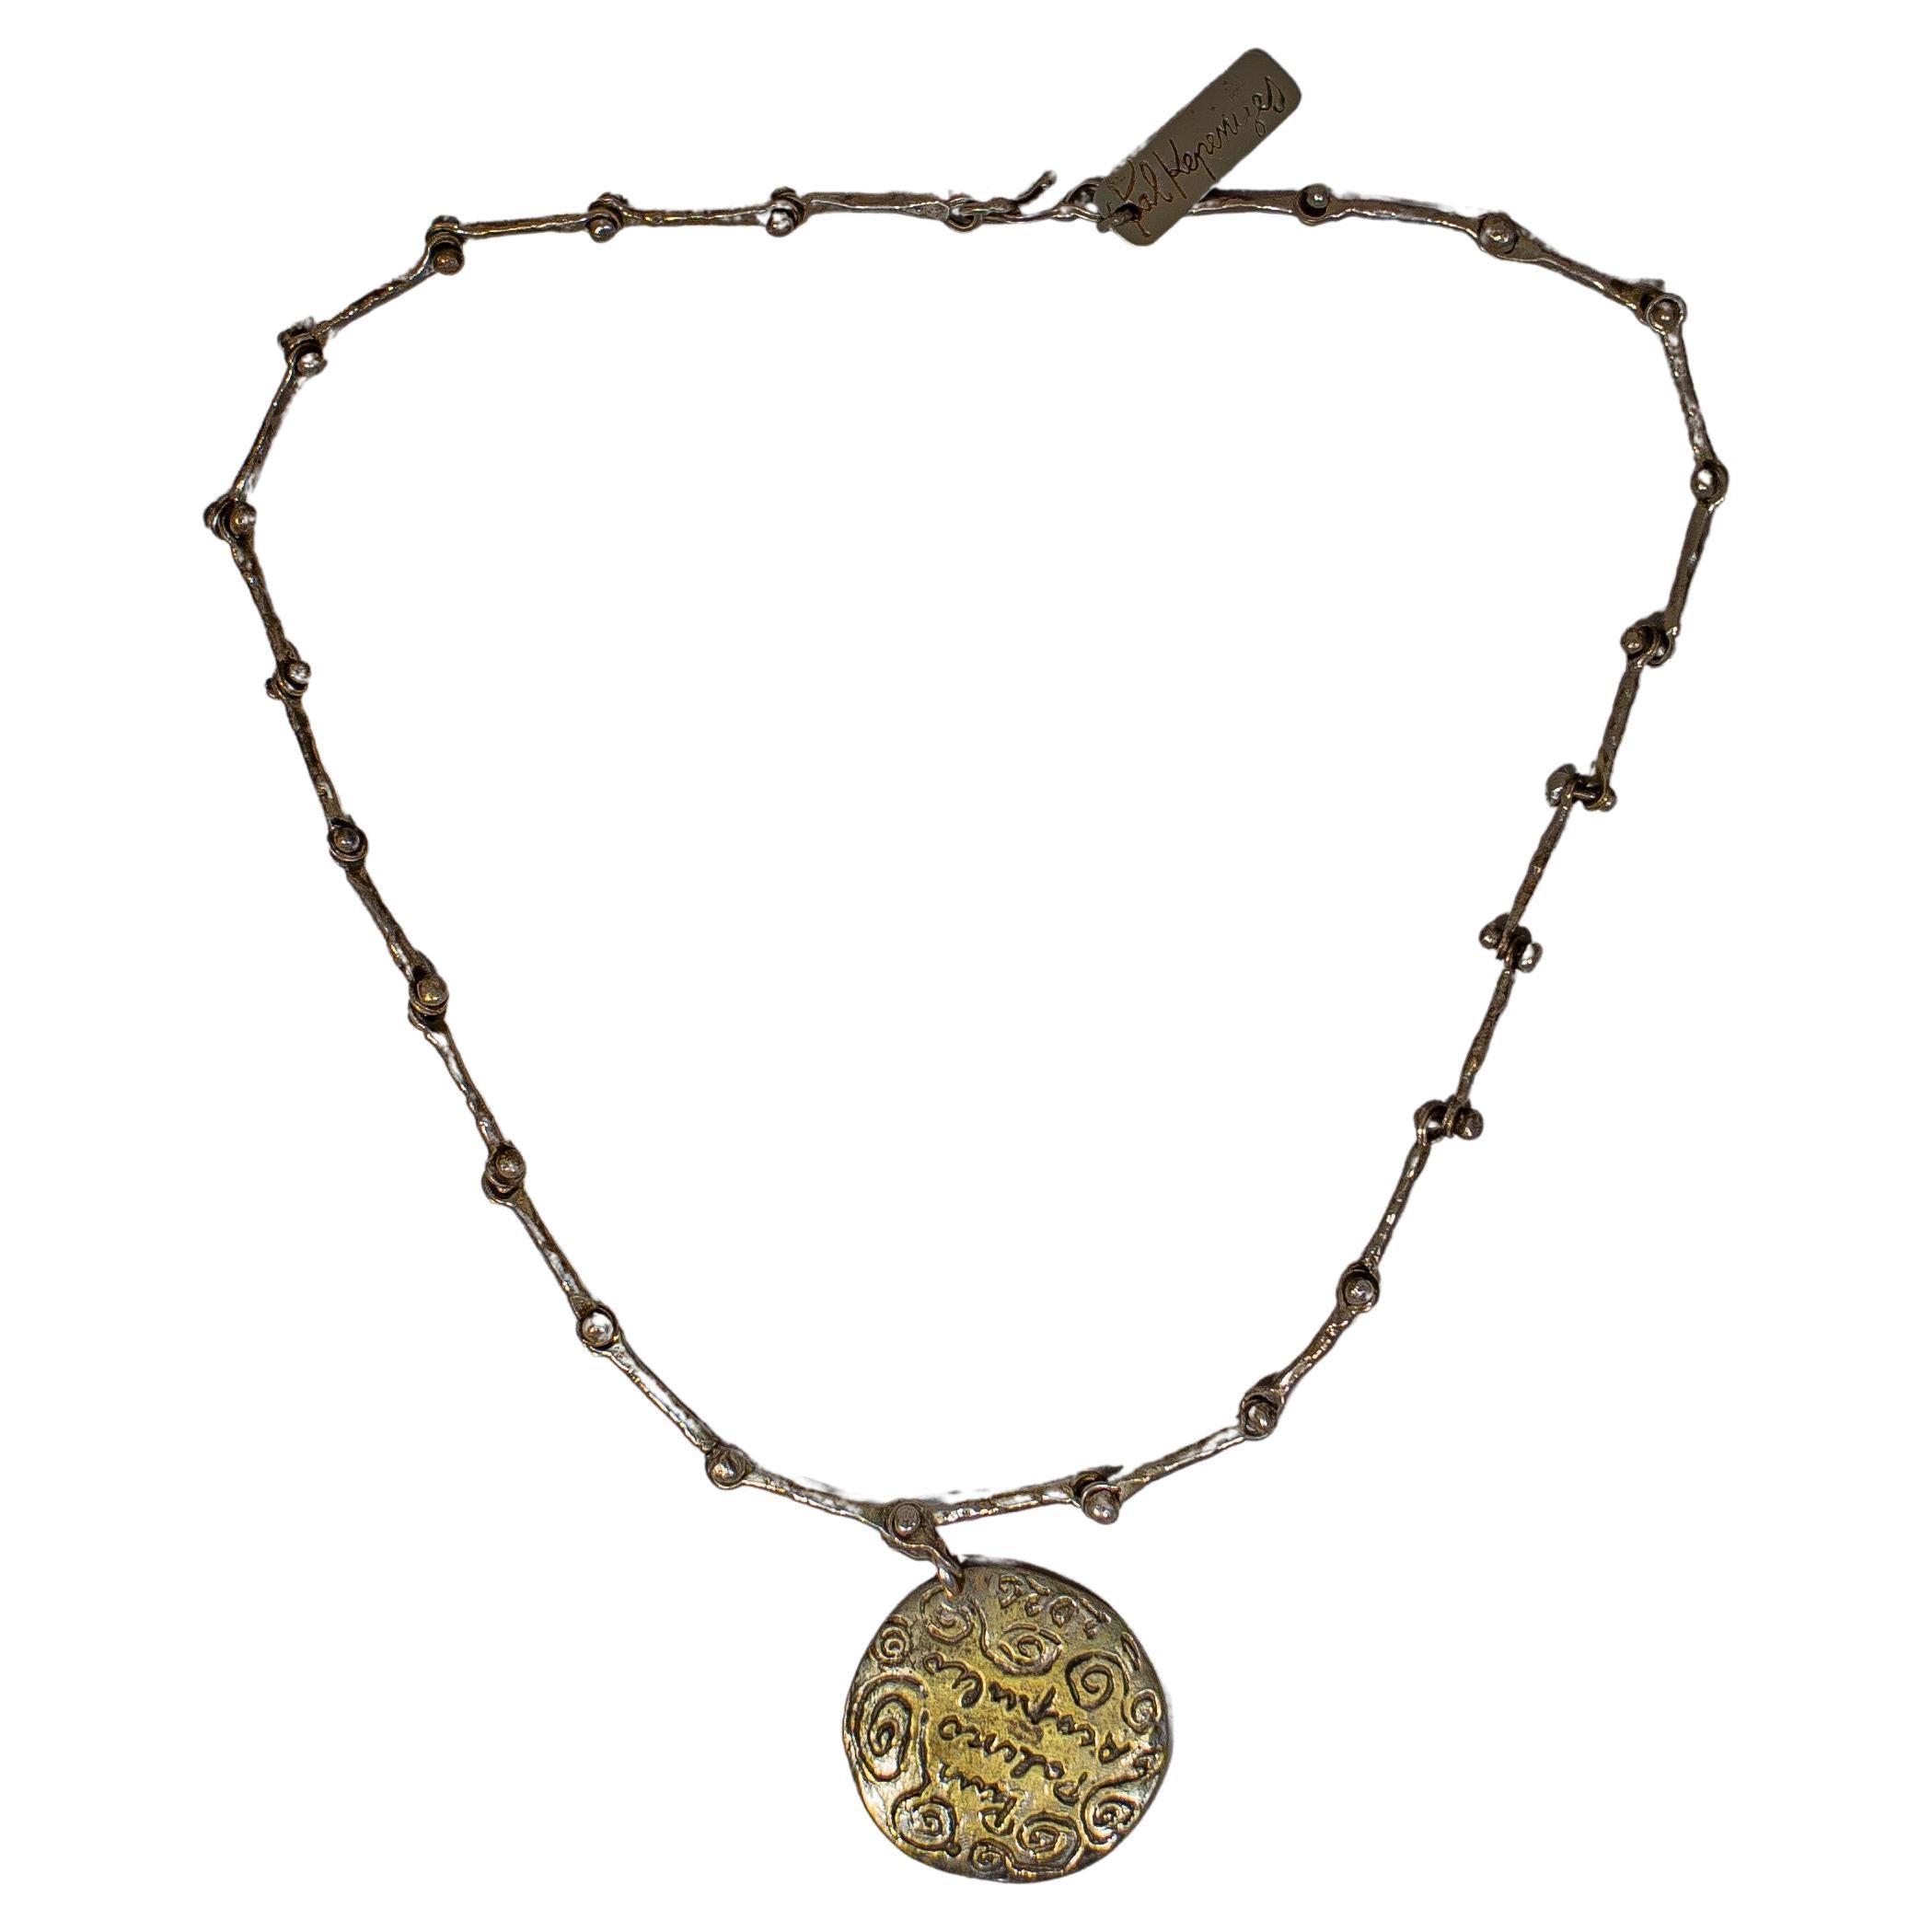 Pal Kepenyes Brutalistische Halskette aus Silber und Bronze